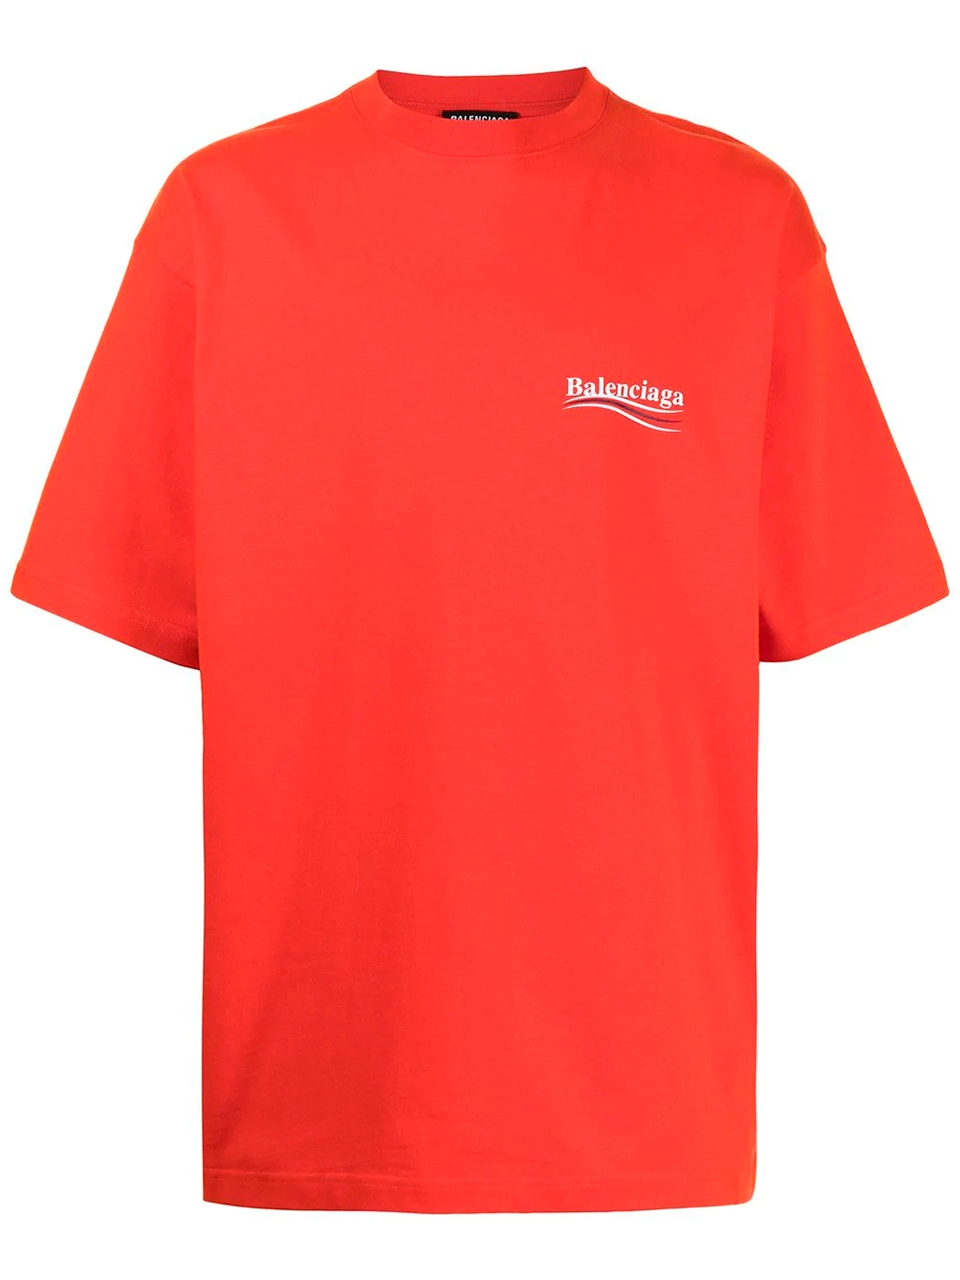 Imagem de: Camiseta Balenciaga Vermelha com Logo